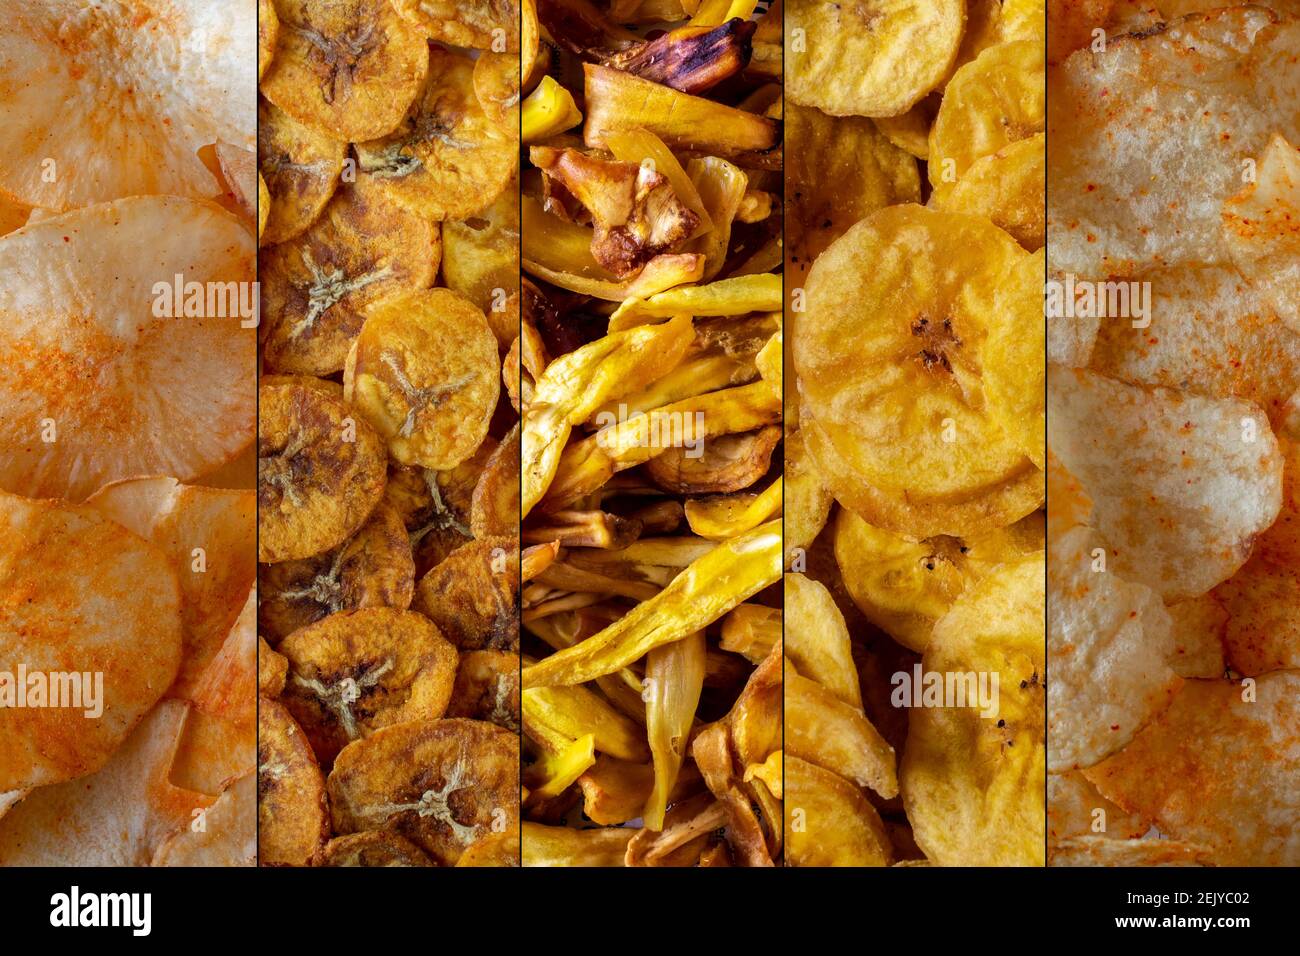 Croustilles de variété de pomme de terre, banane, fruit de la jaquette et manioc. Types de chips communes à la fois sucrées et acidulées Banque D'Images